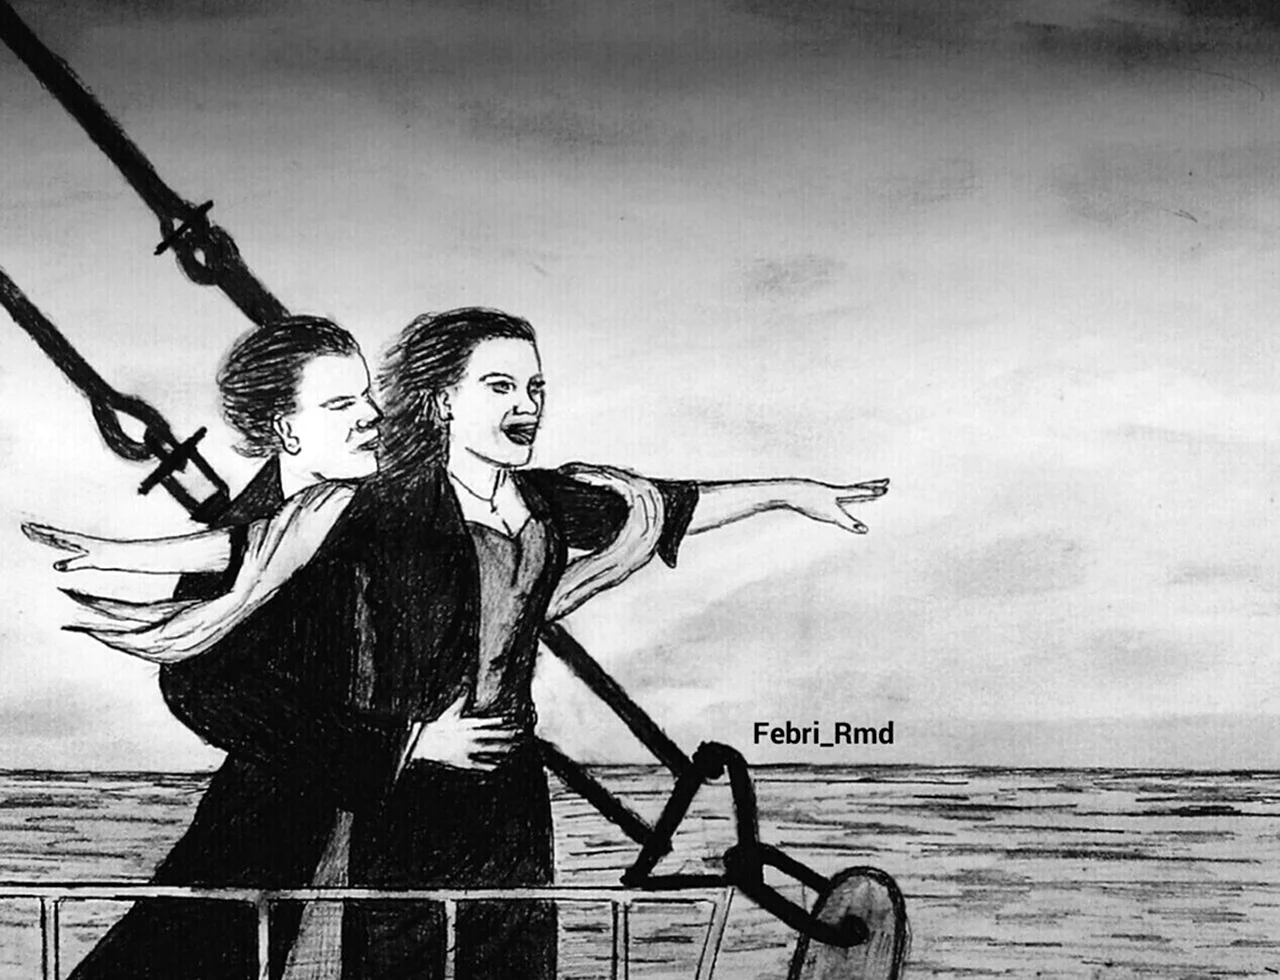 Иллюстрация к фильму Титаник. Для срисовки